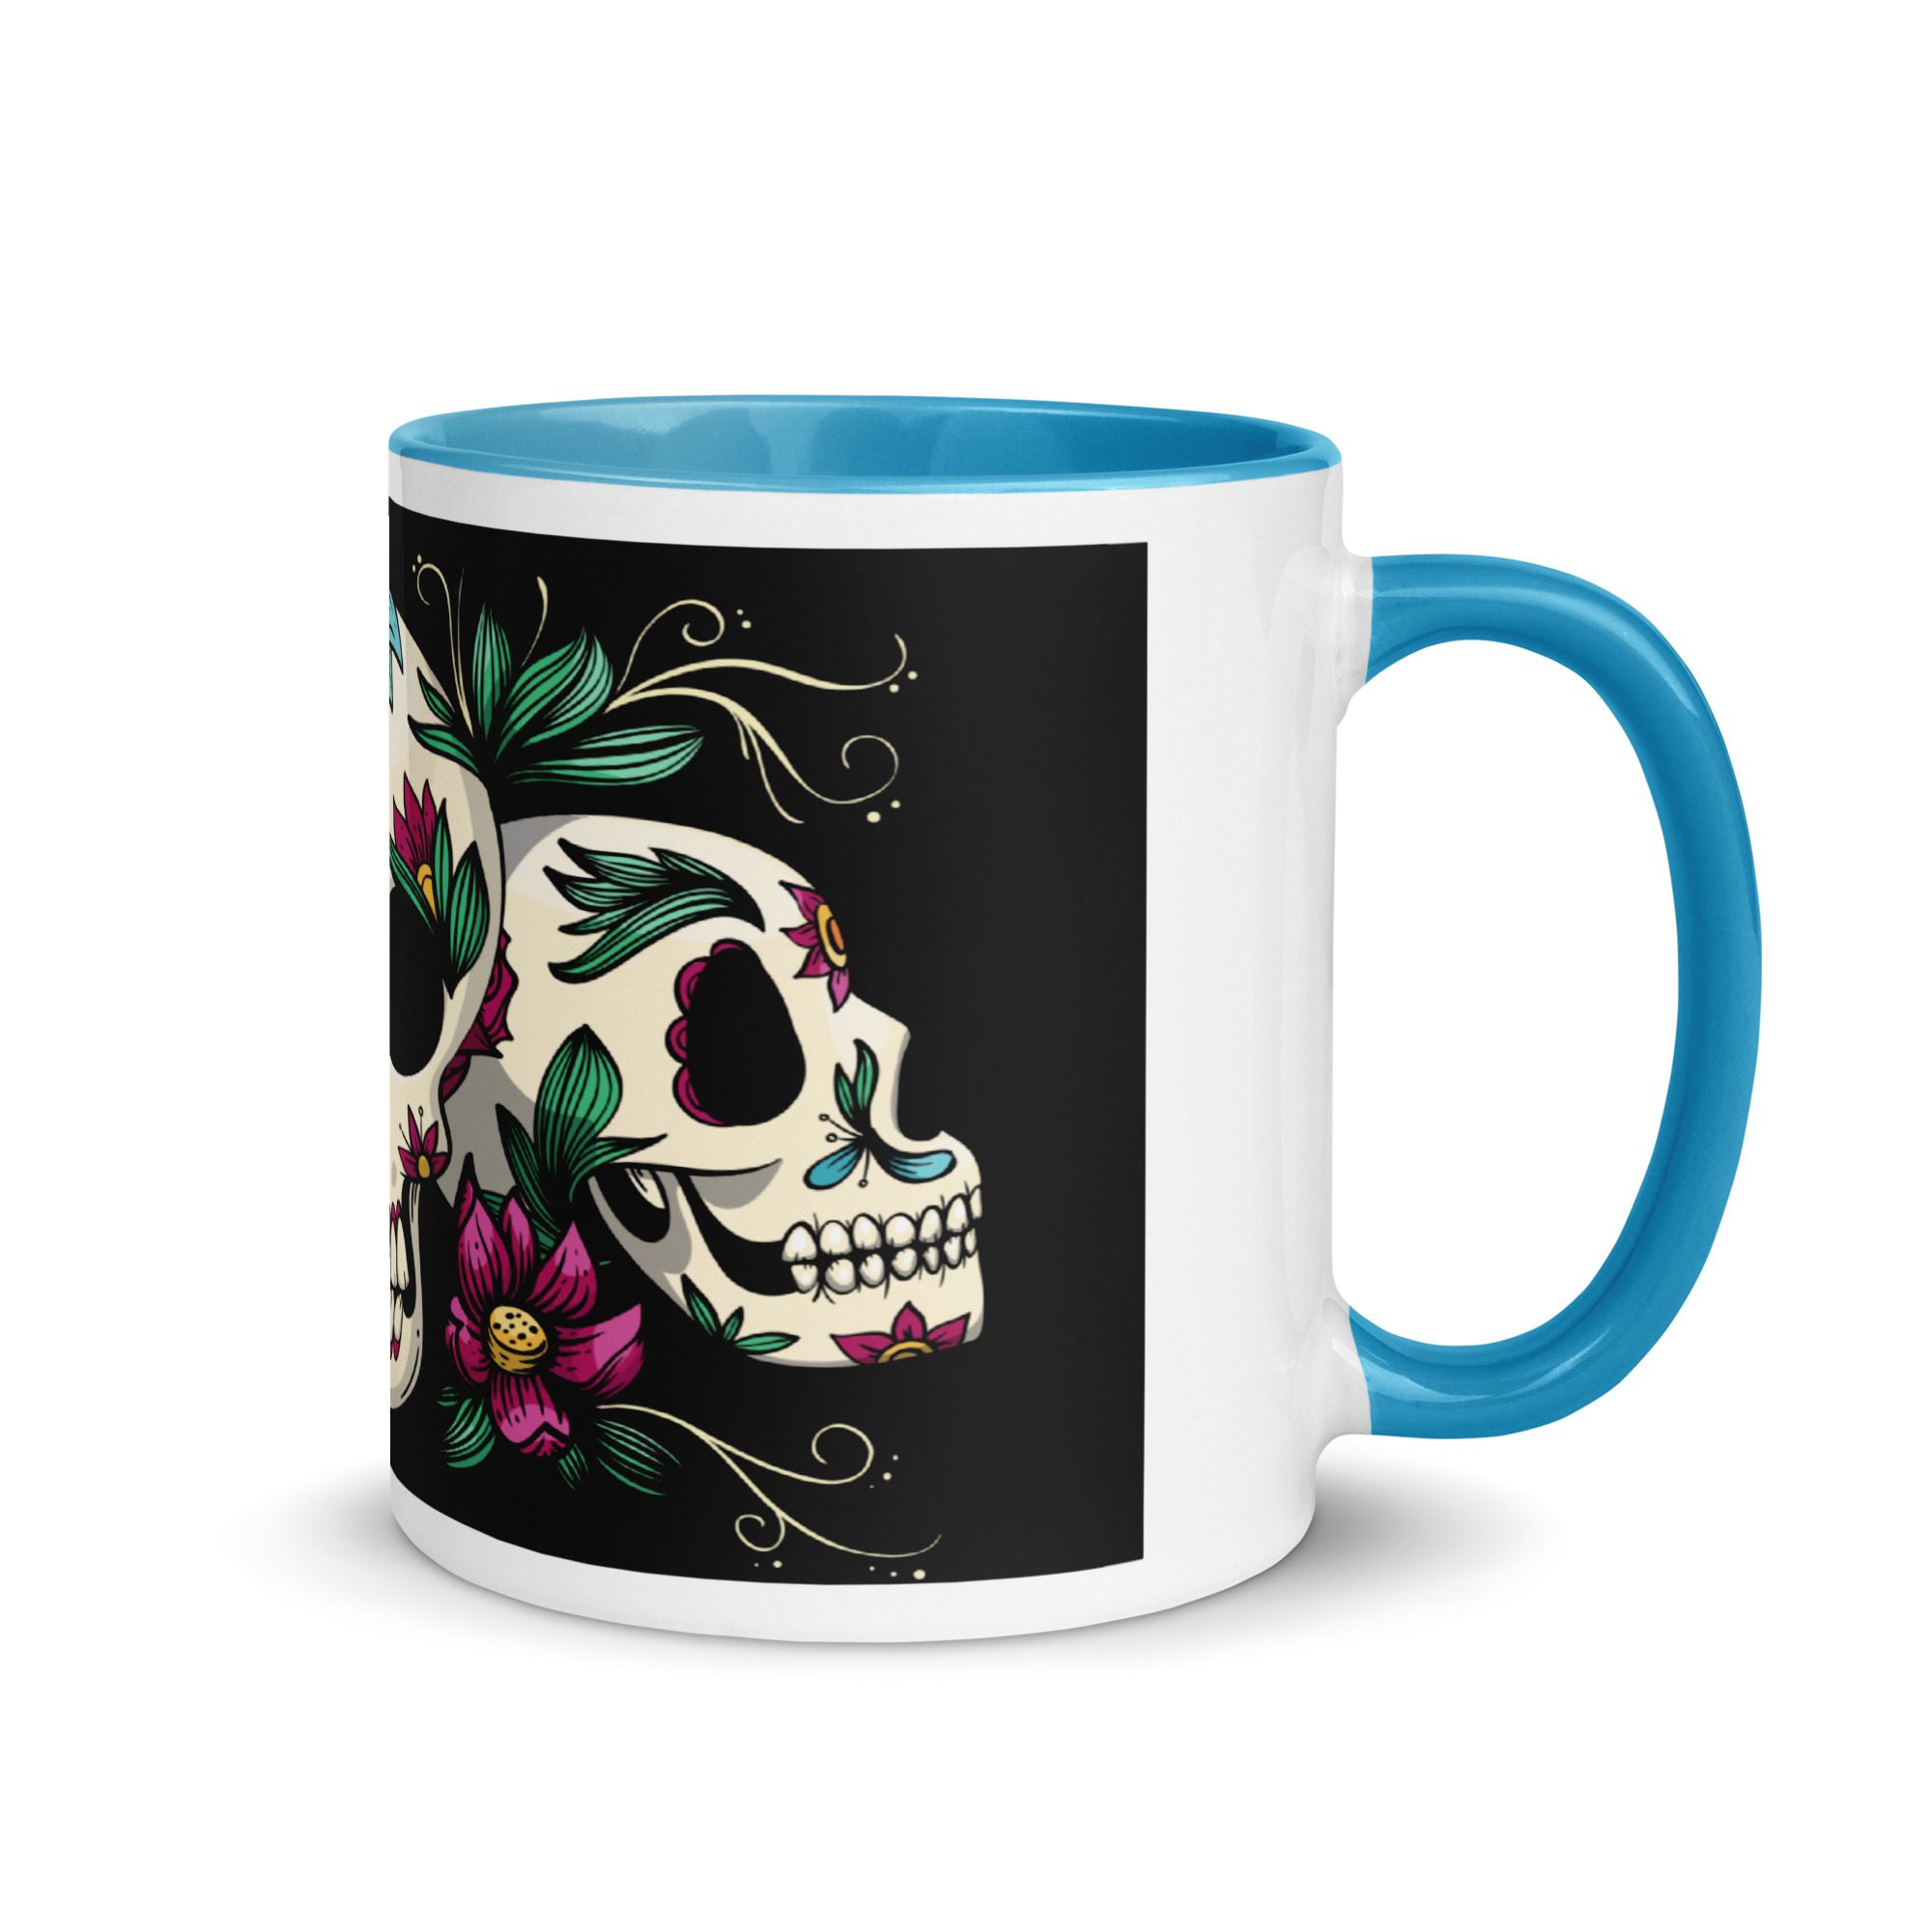 white ceramic mug with color inside blue 11 oz right 65367417bec2e